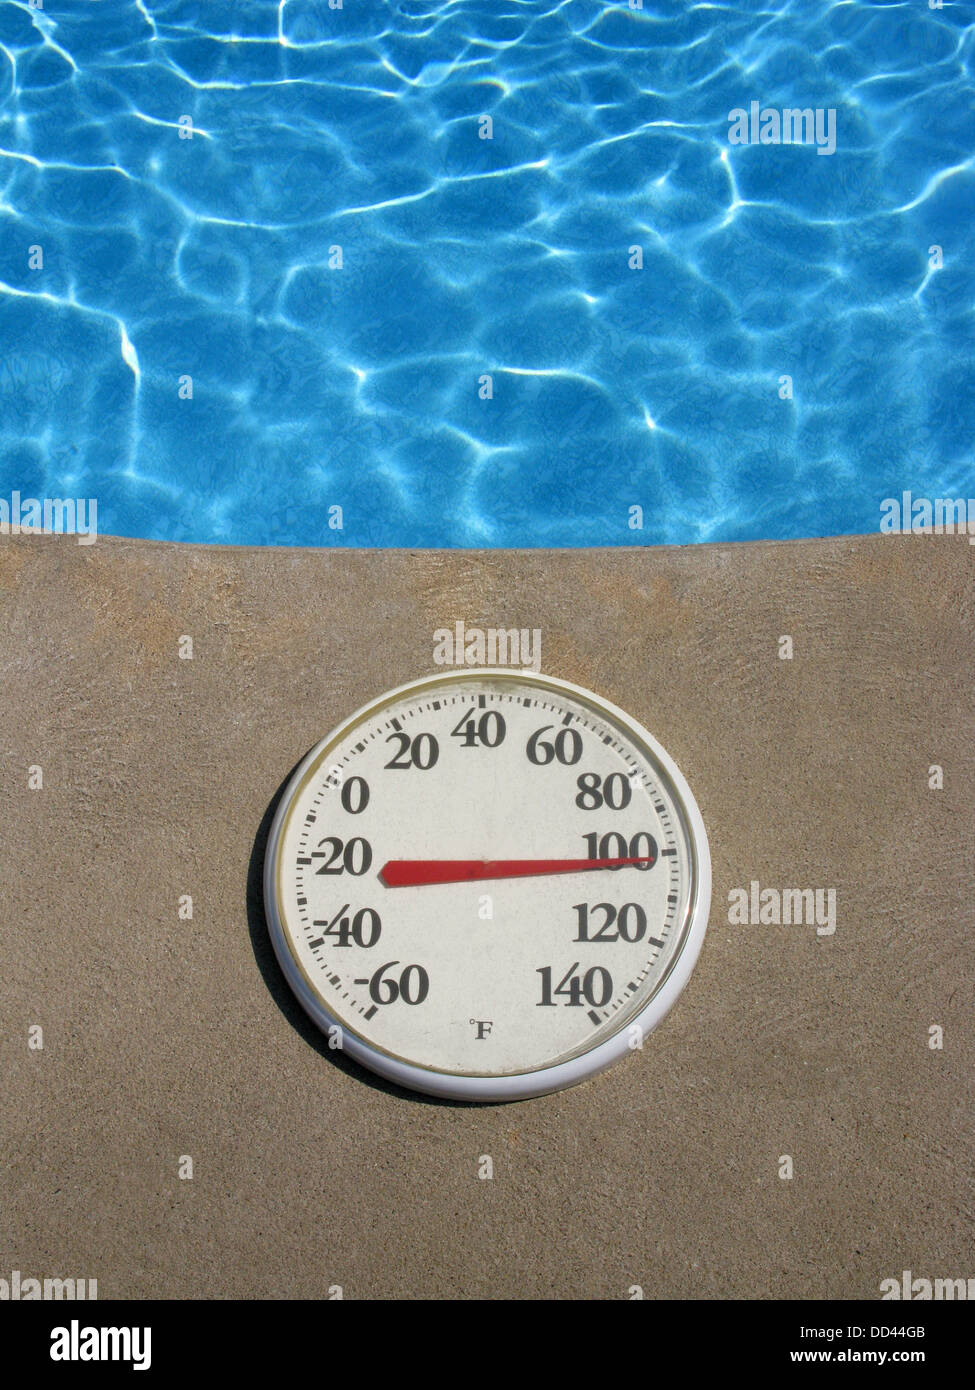 Eine Runde Kunststoff-Thermometer zeigt heiße Temperatur. Ziel ist es neben einem Schwimmbad von blauem Wasser Stockfoto